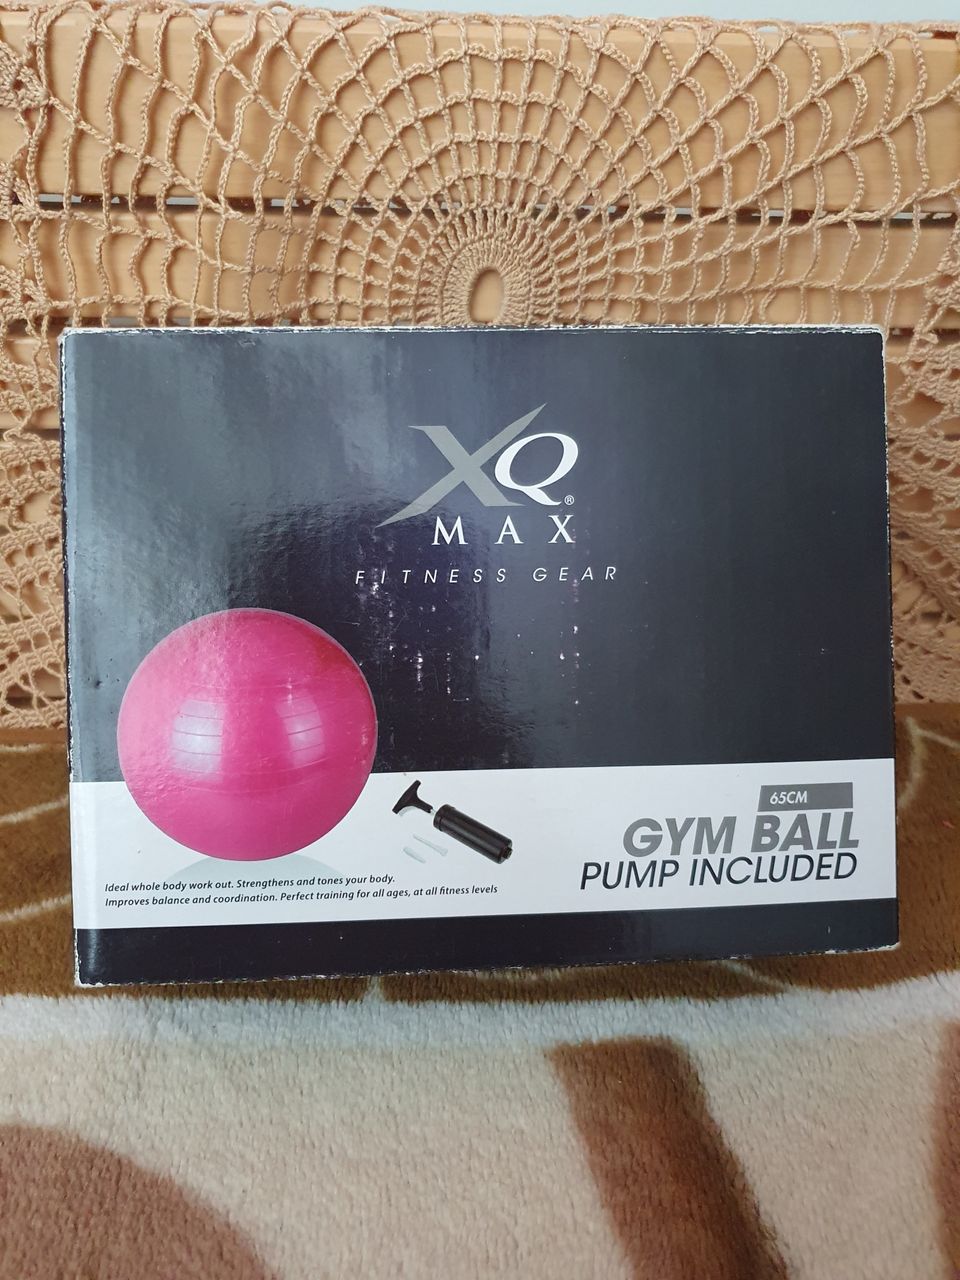 XQ MAX FITNESS GEAR 65cm jumppapallo (sisältää pumpun)